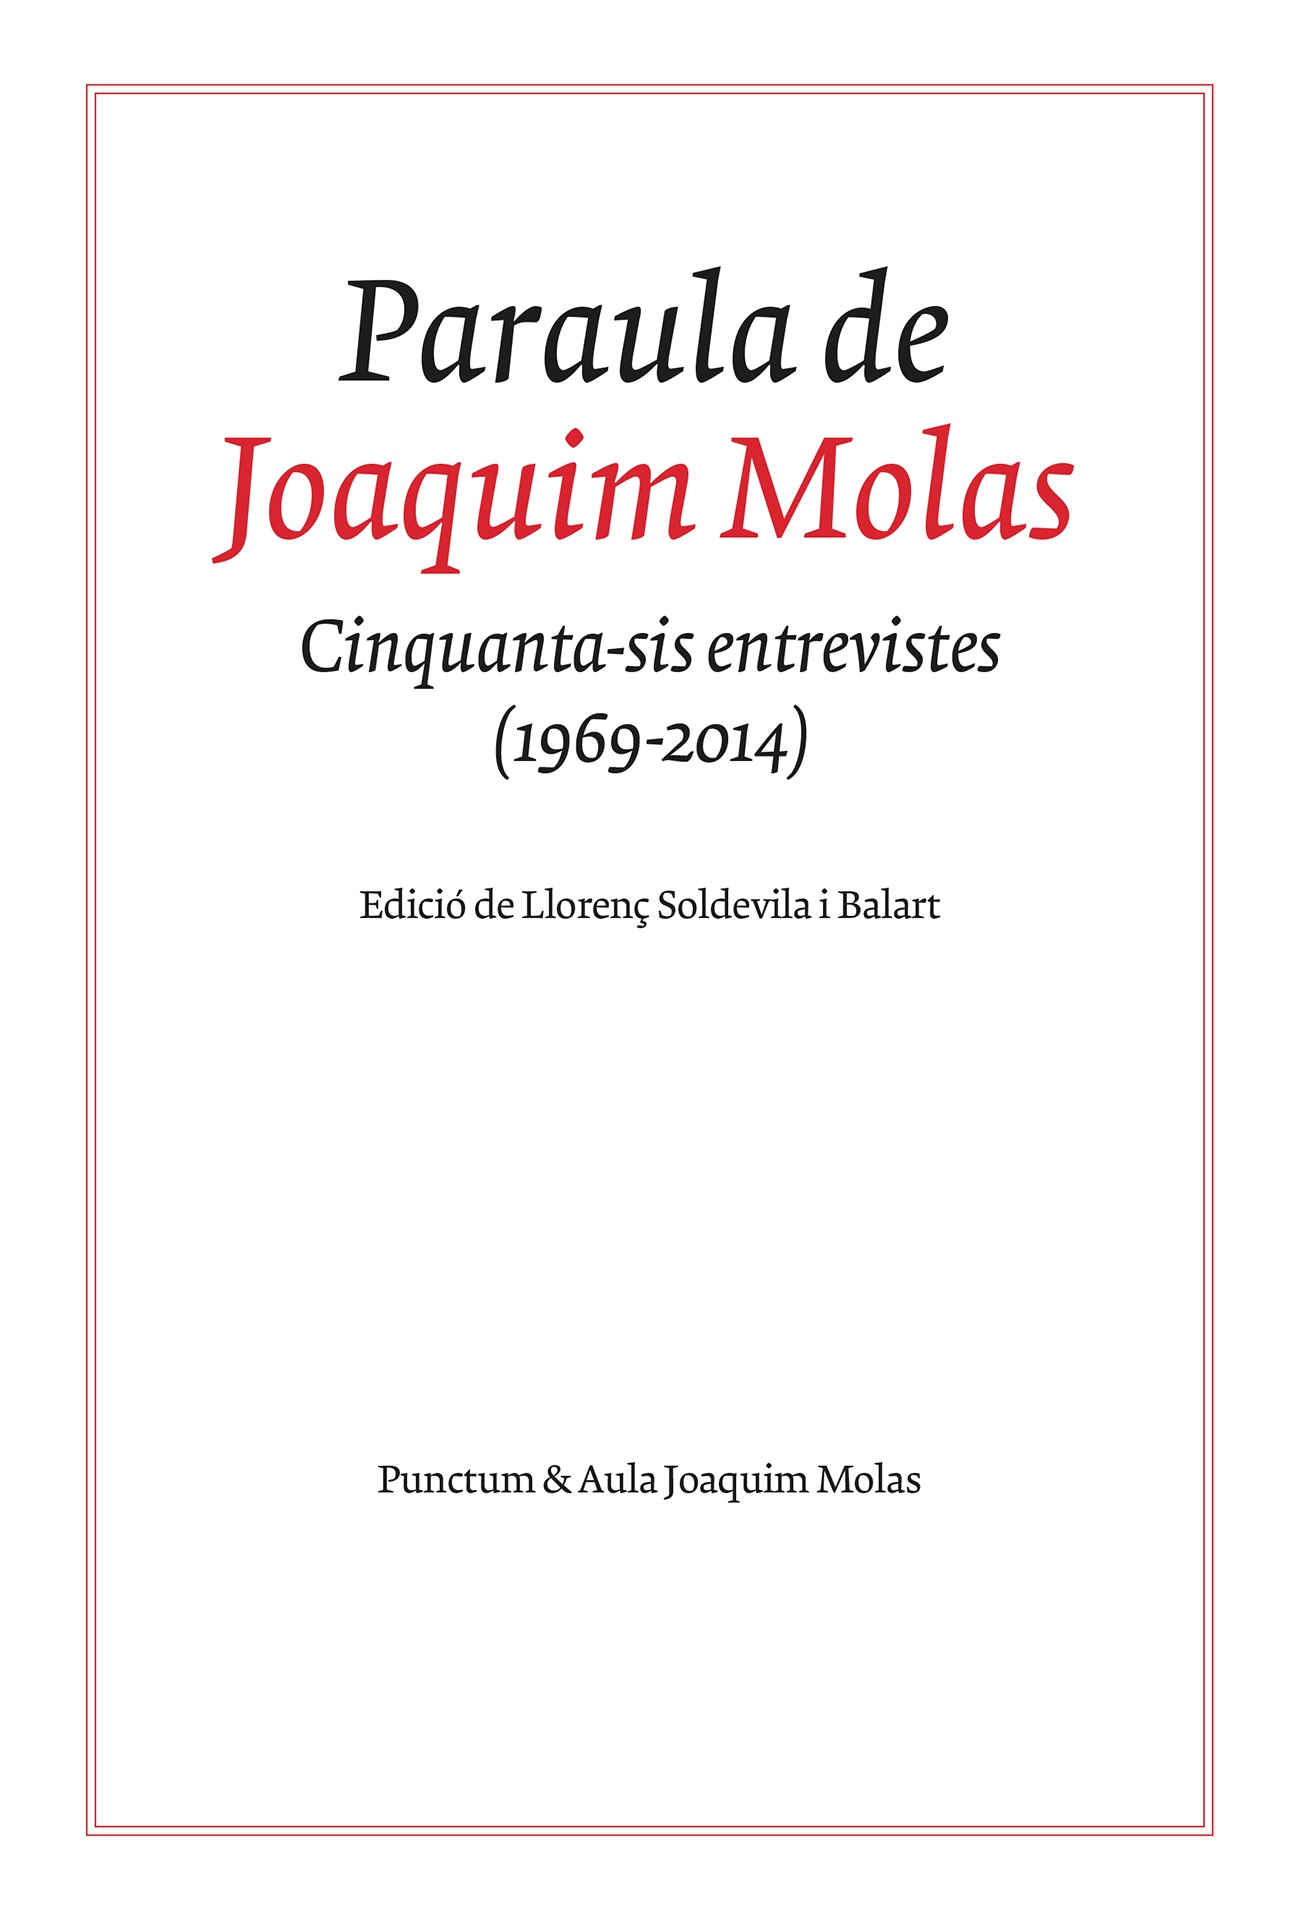 Imagen de portada del libro Paraula de Joaquim Molas